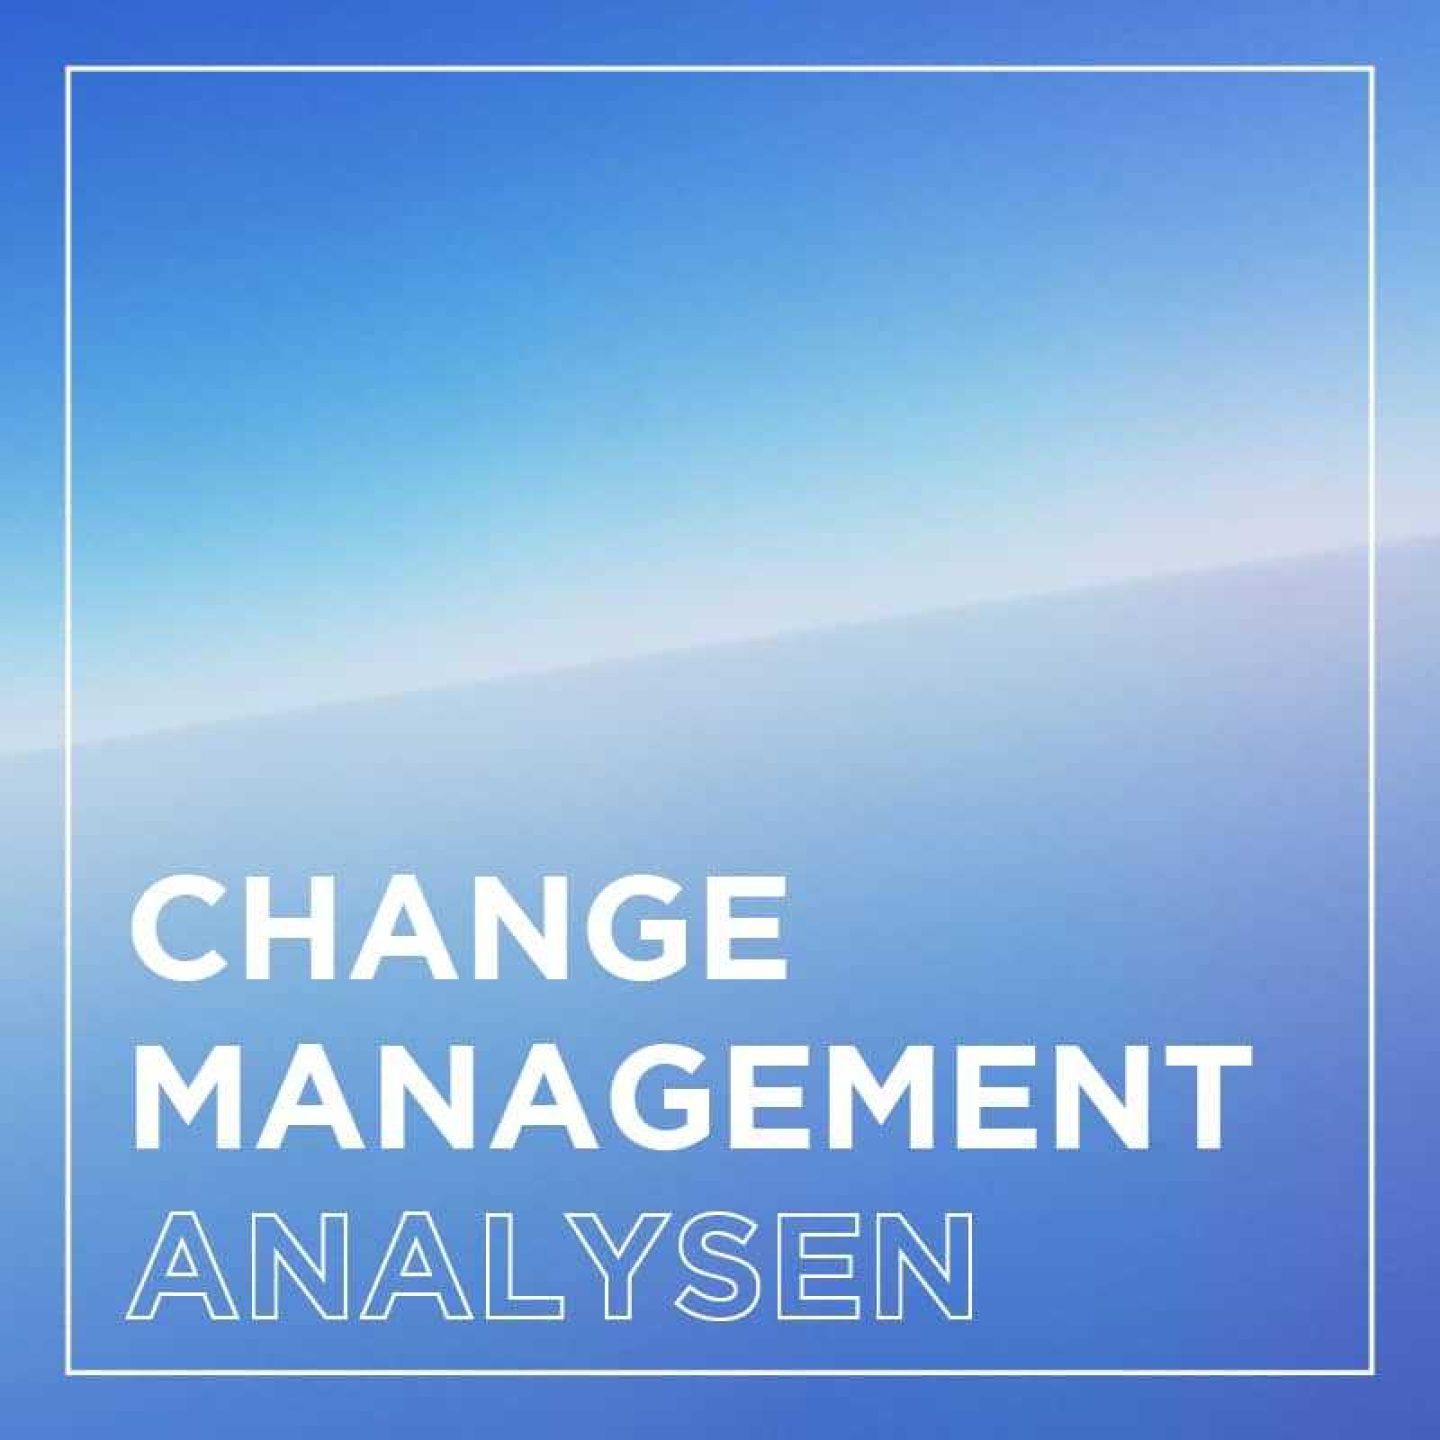 Kachel change management analysen